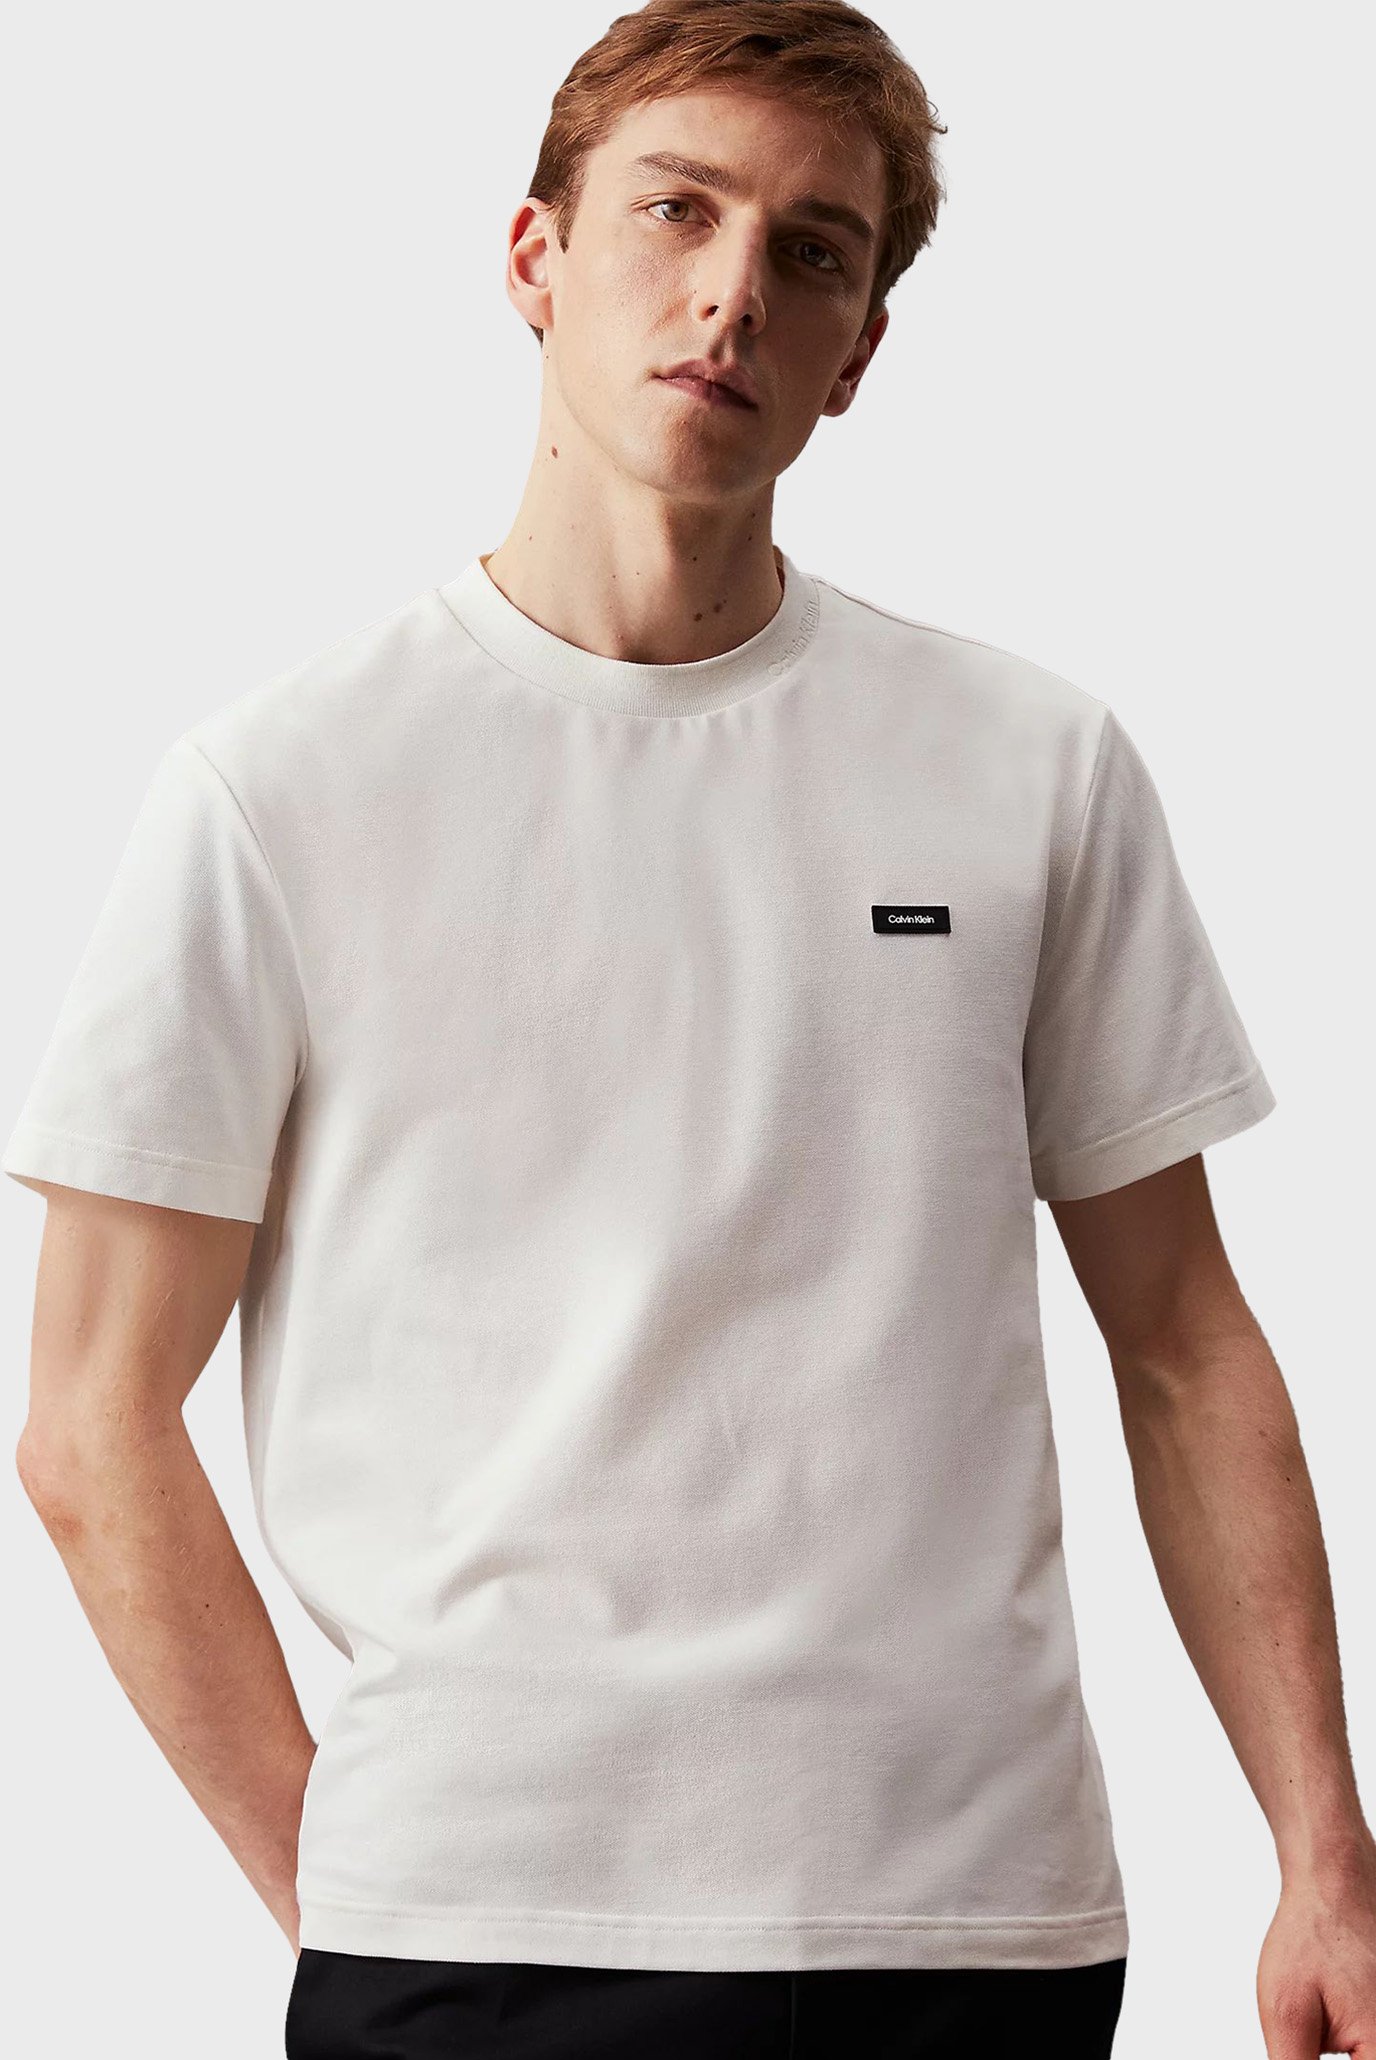 Мужская белая футболка THERMO TECH PIQUE 1